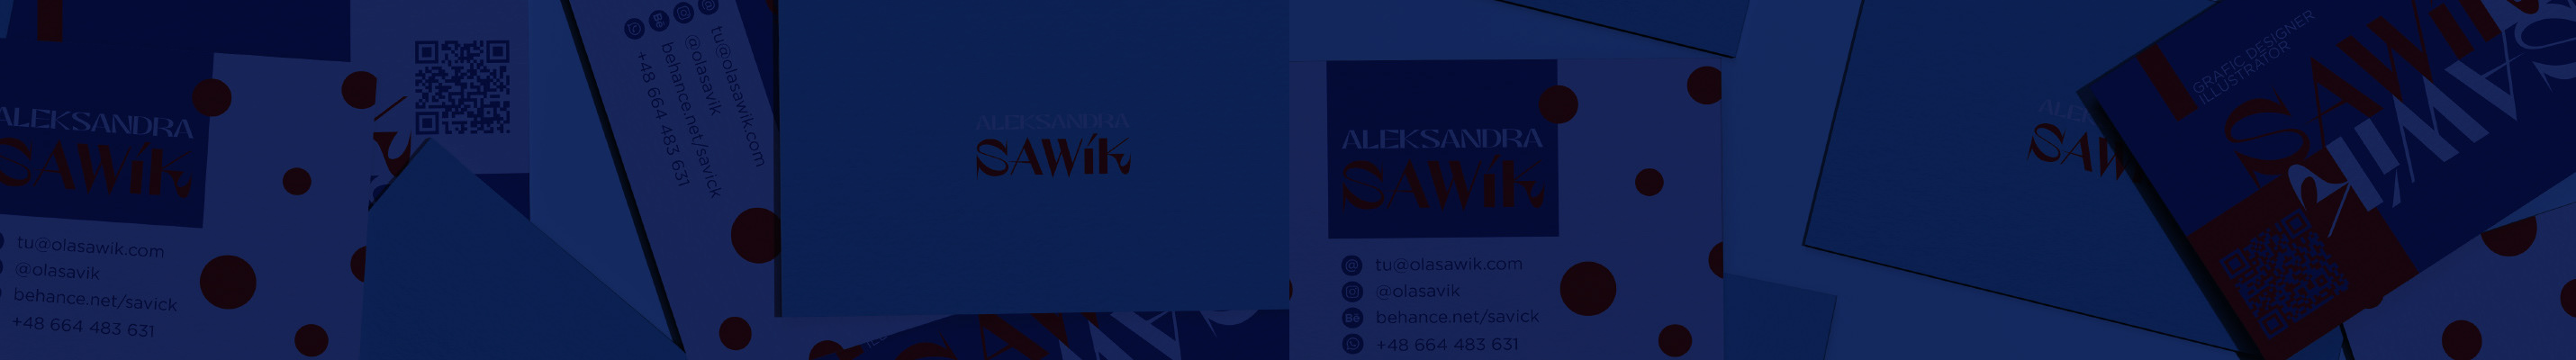 Banner de perfil de Aleksandra Sawik